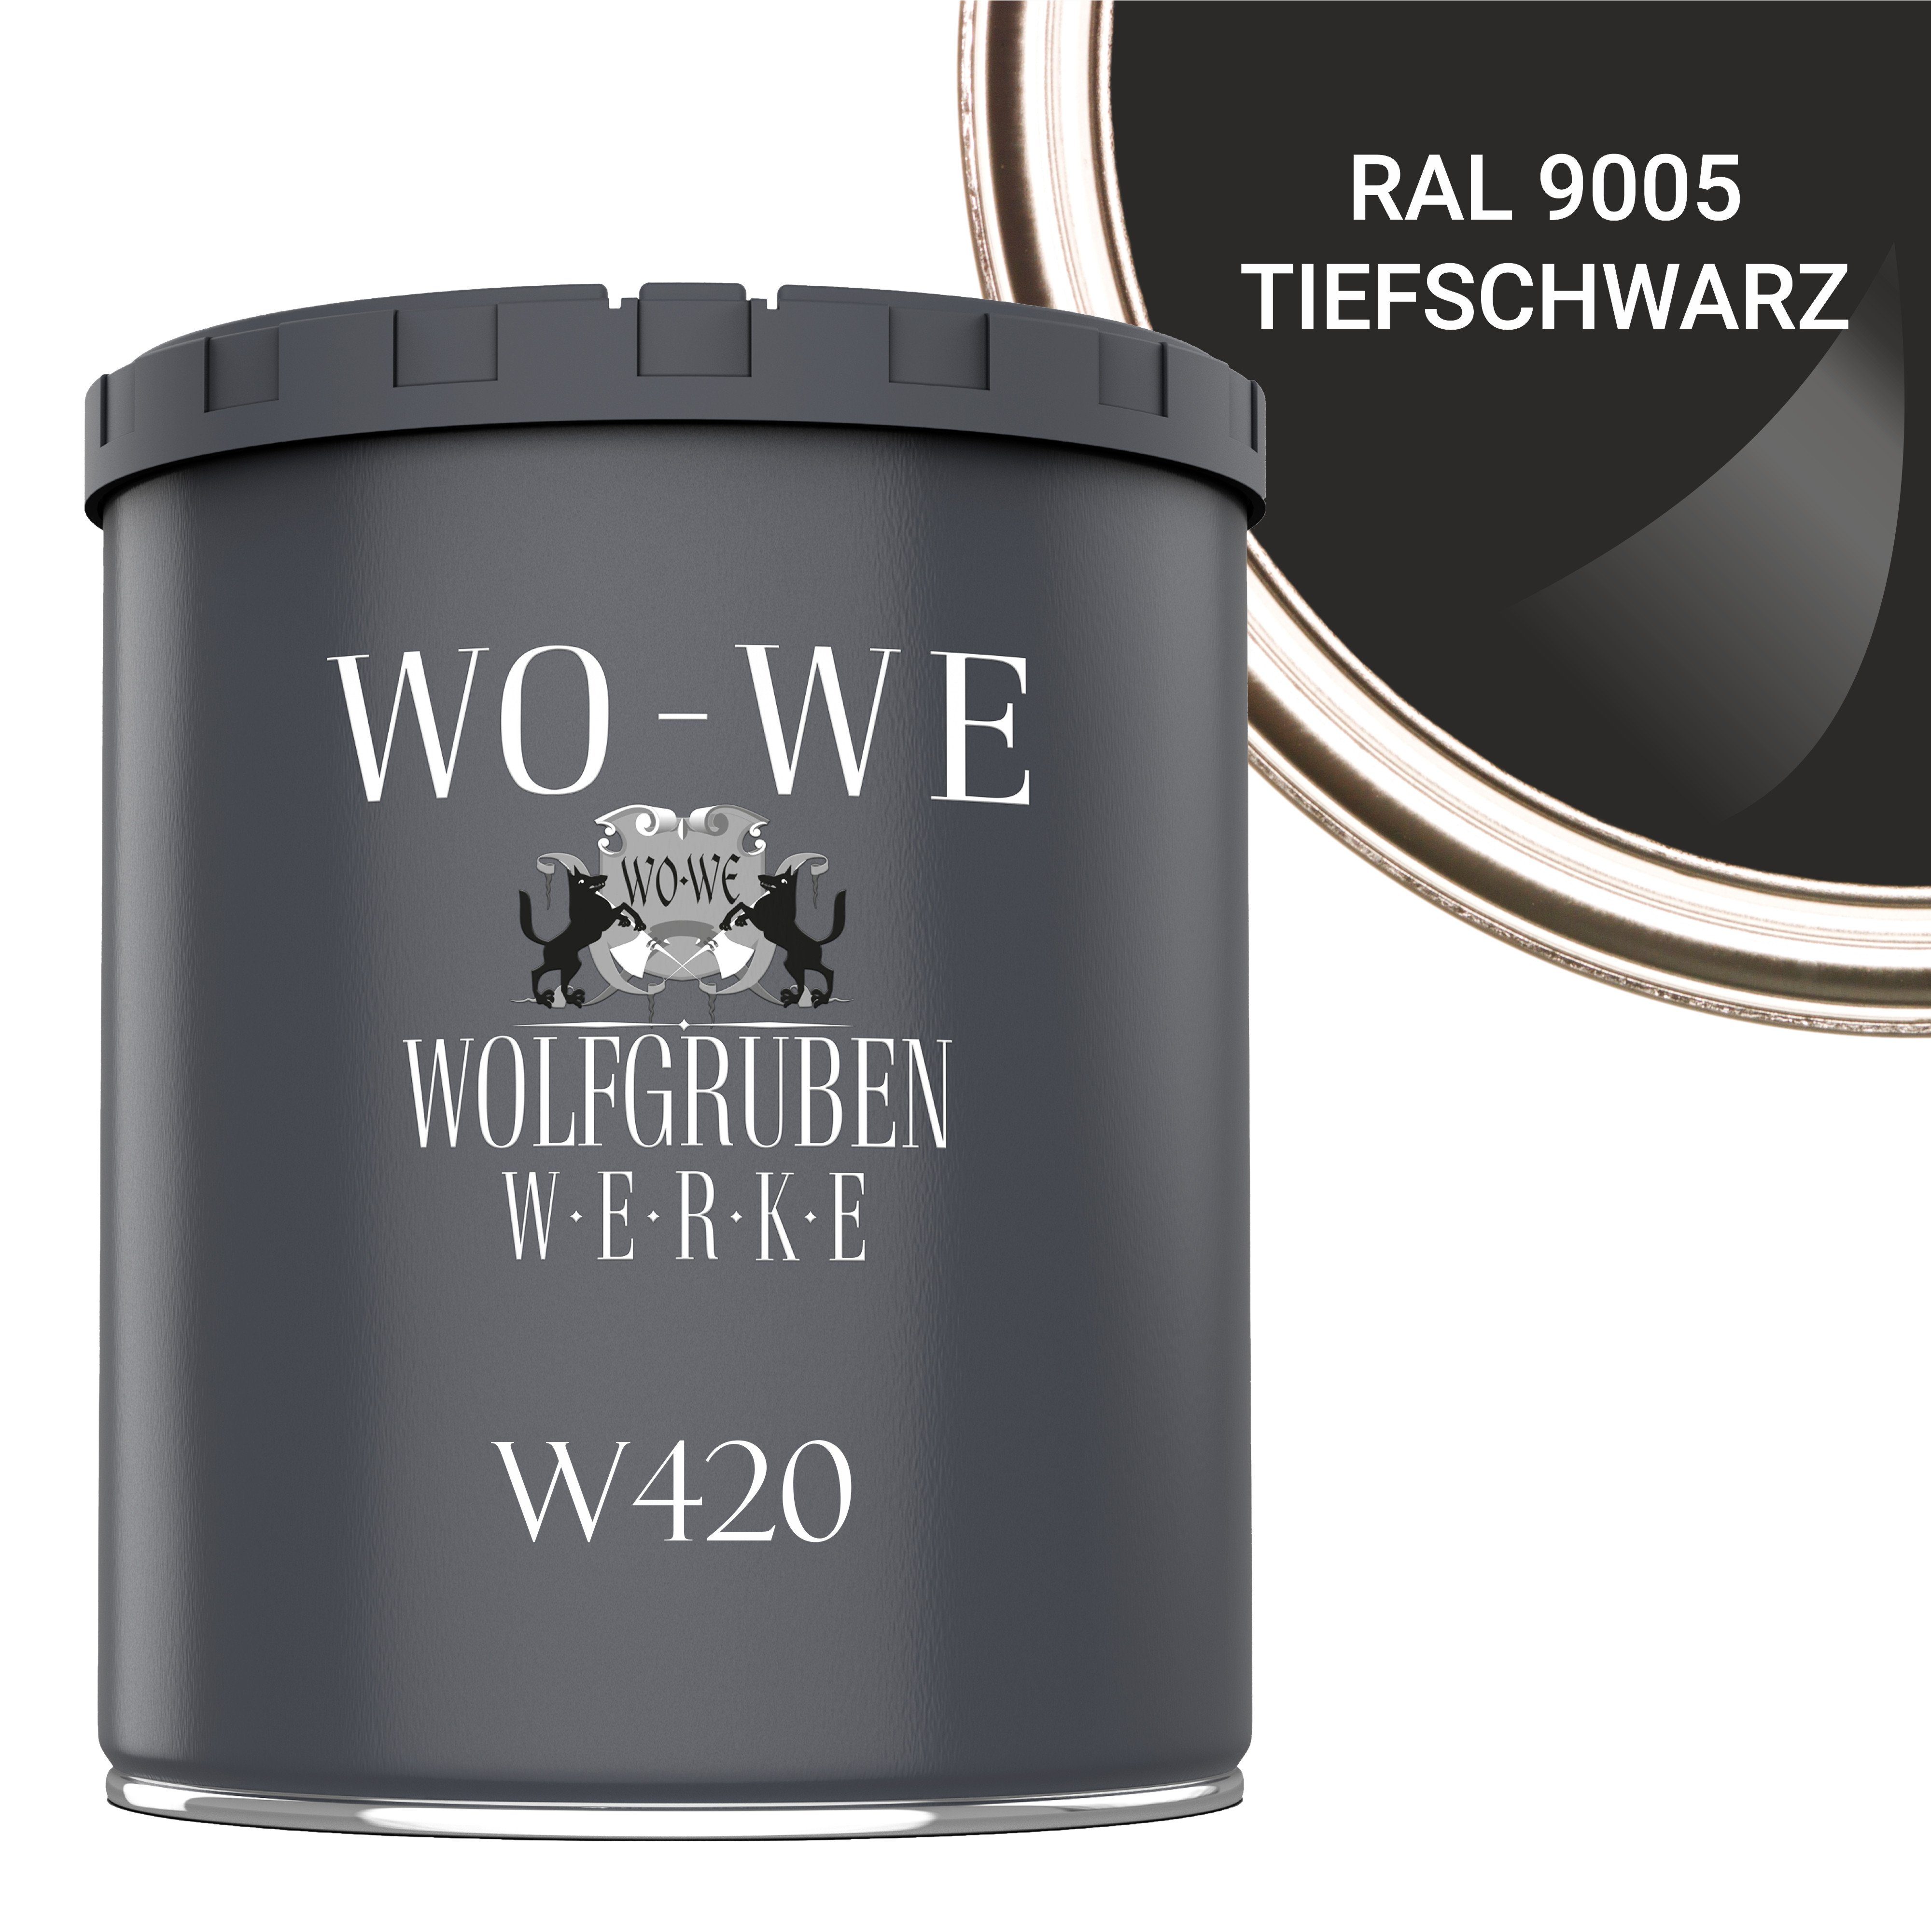 RAL Holzanstrich WO-WE Tiefschwarz Seidenglänzend, W420, Wetterschutzfarbe 9005 1-10L, Holzlack Wasserbasis Holzfarbe